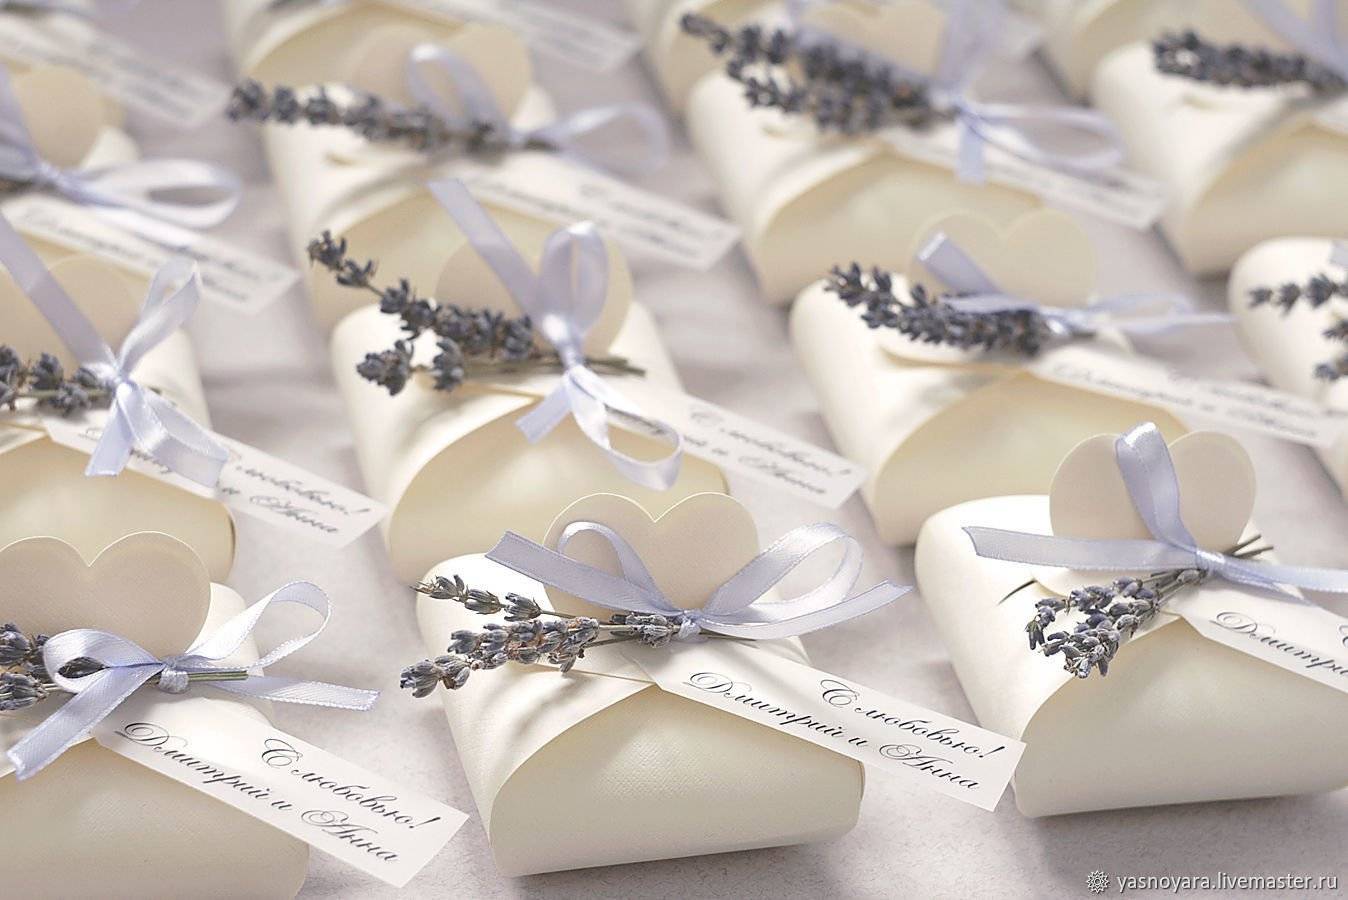 Подарки на конкурсы на свадьбу - какие призы дарят гостям